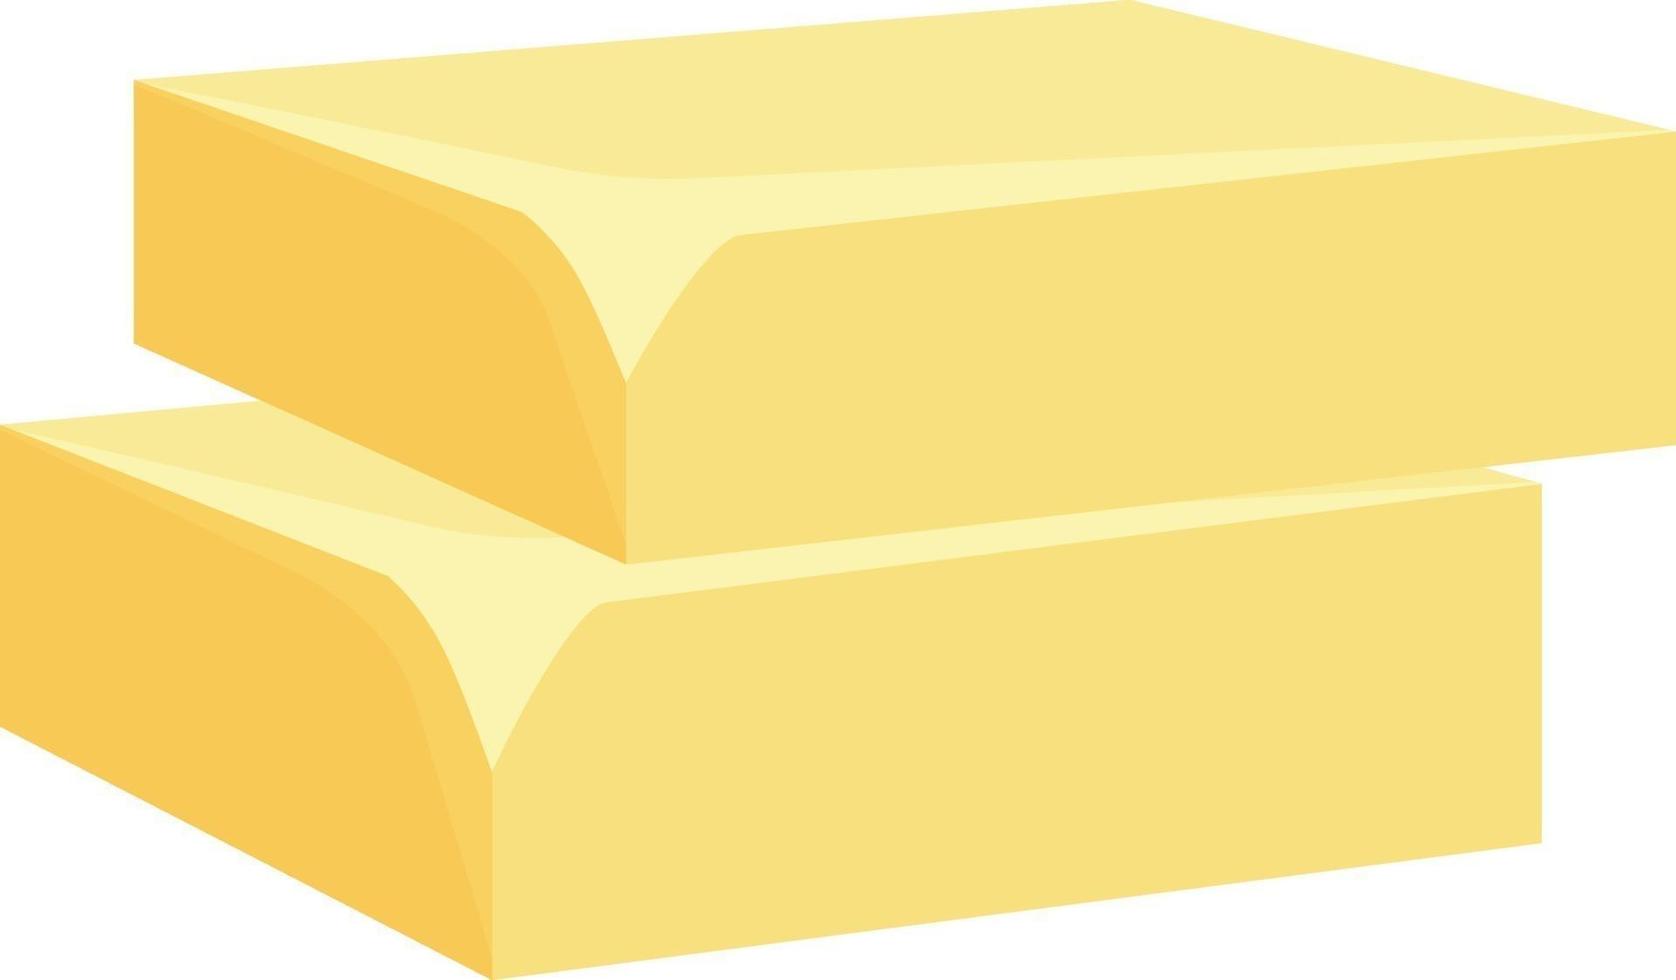 dois blocos de manteiga, ilustração, vetor em um fundo branco.